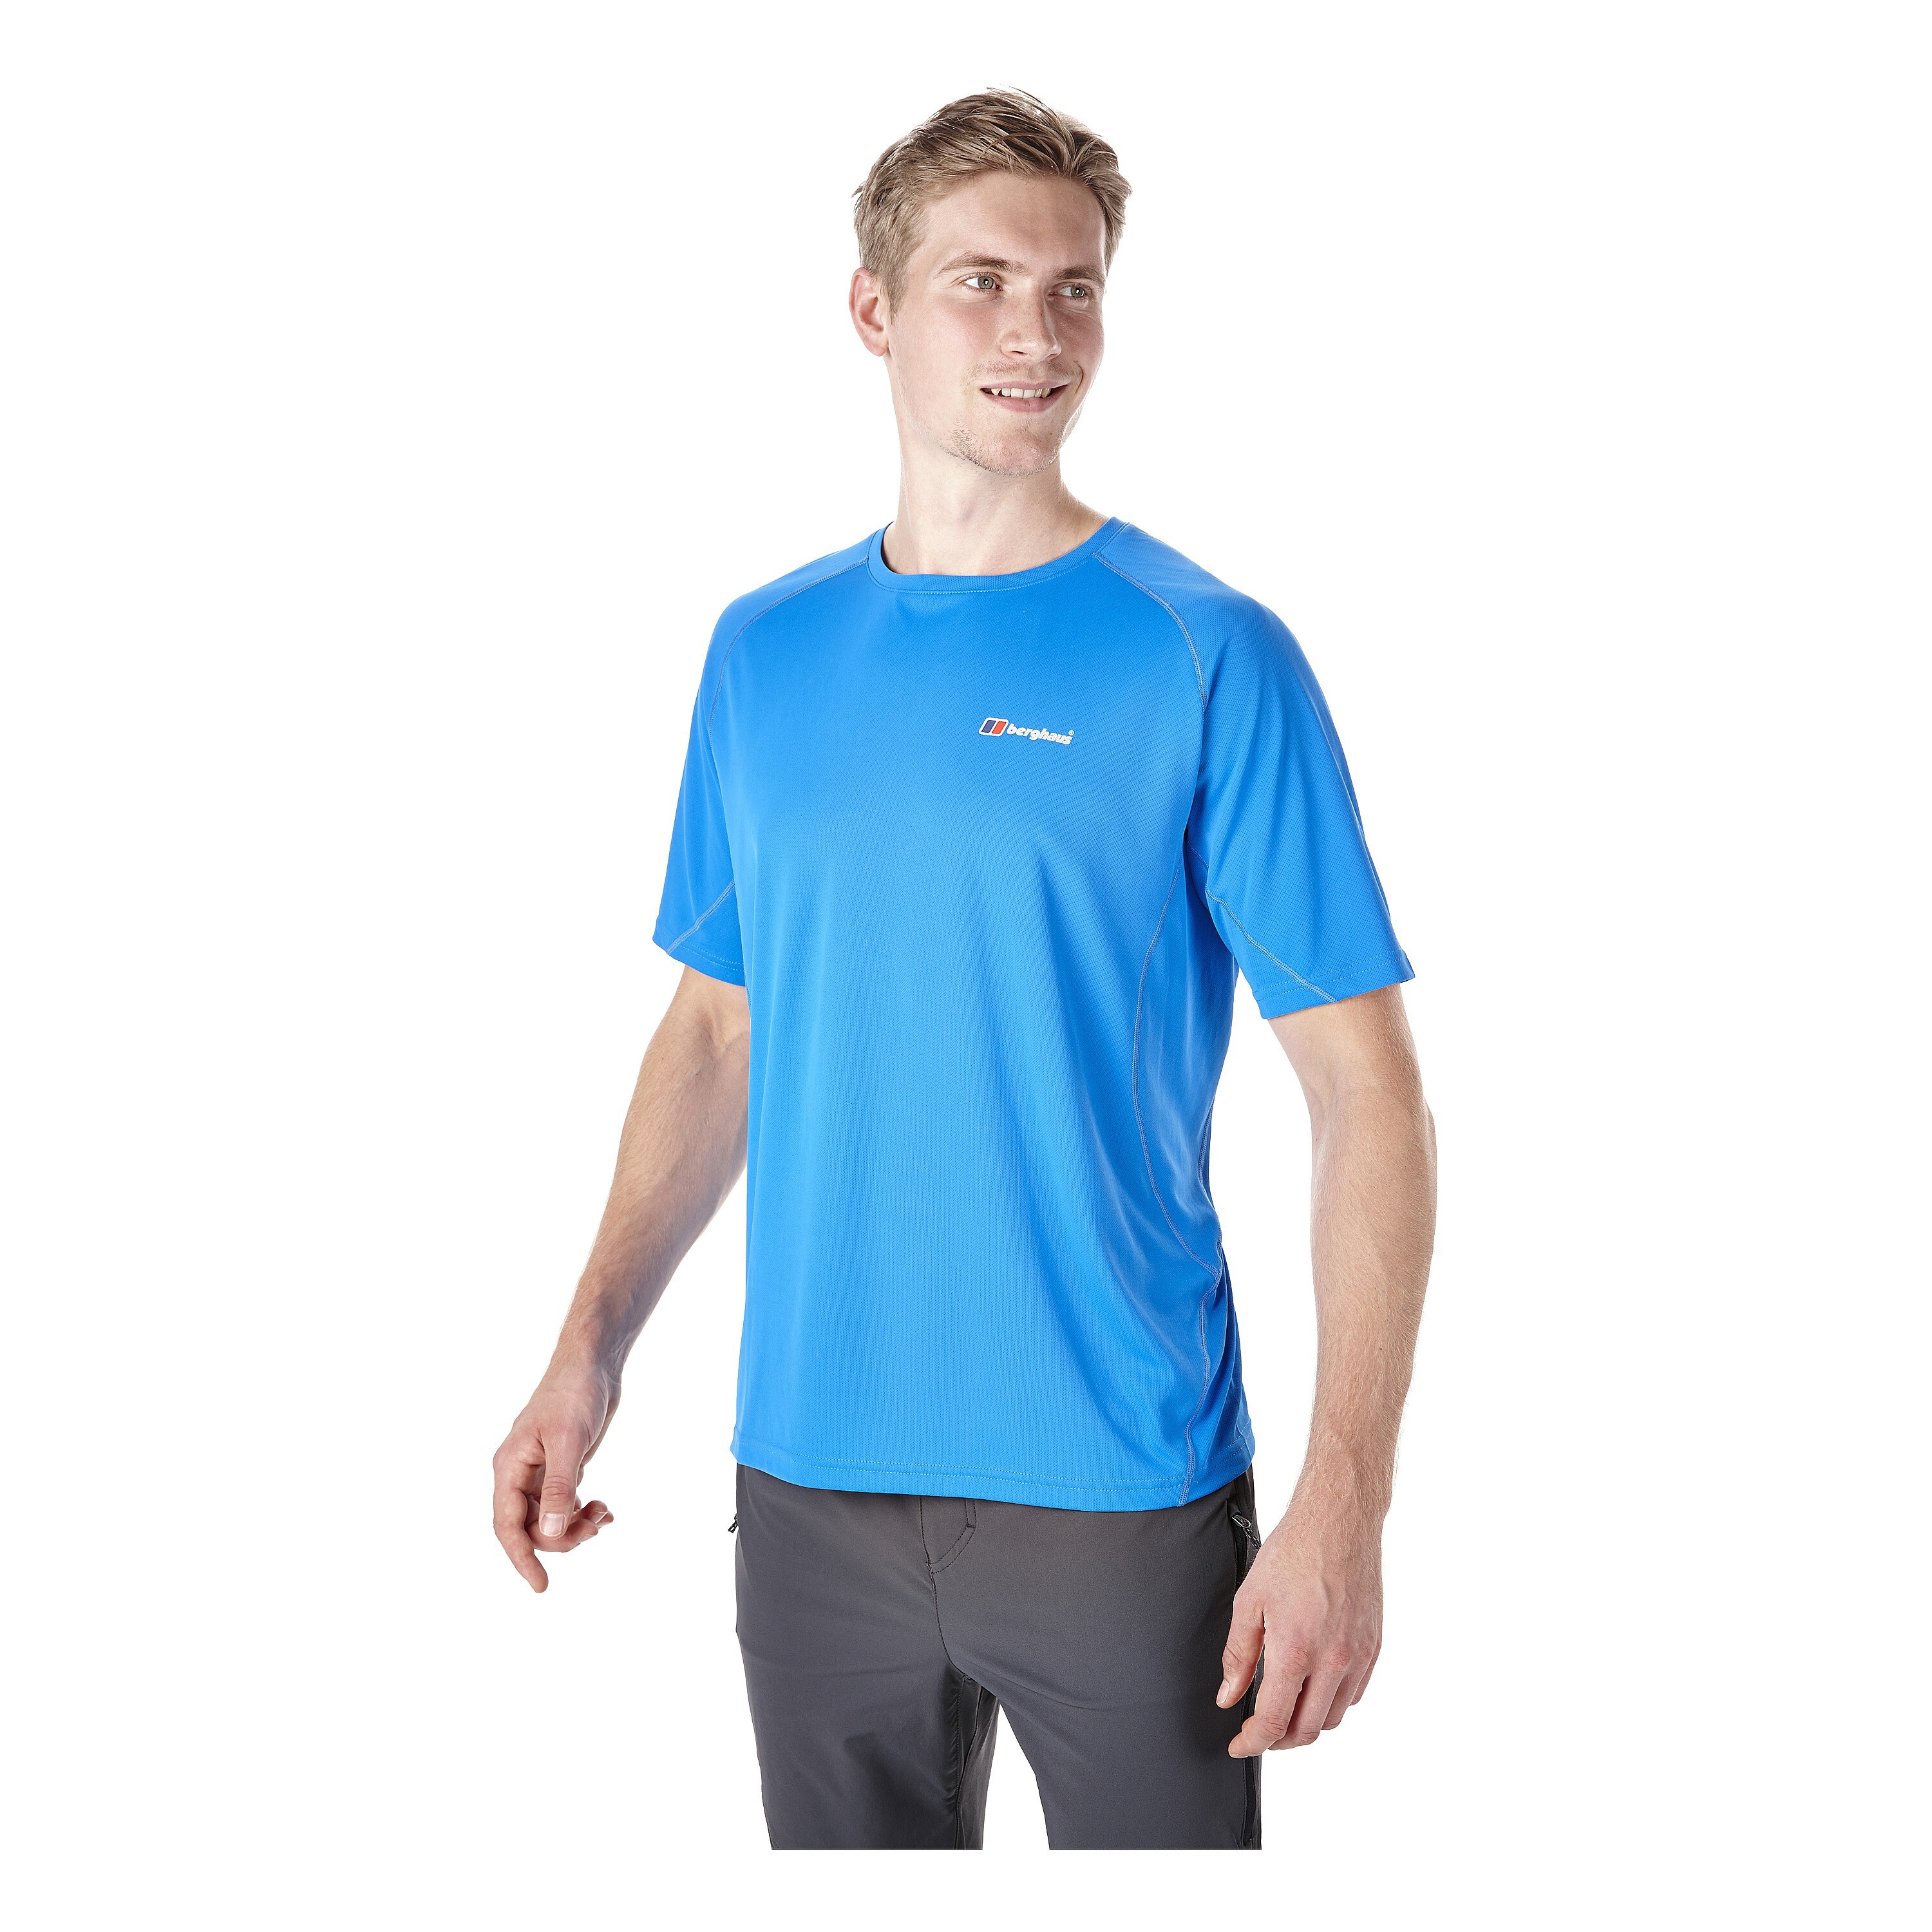 Berghaus T-Shirt Crew Neck Technical blue lemonade | Berghaus T-Shirt ...